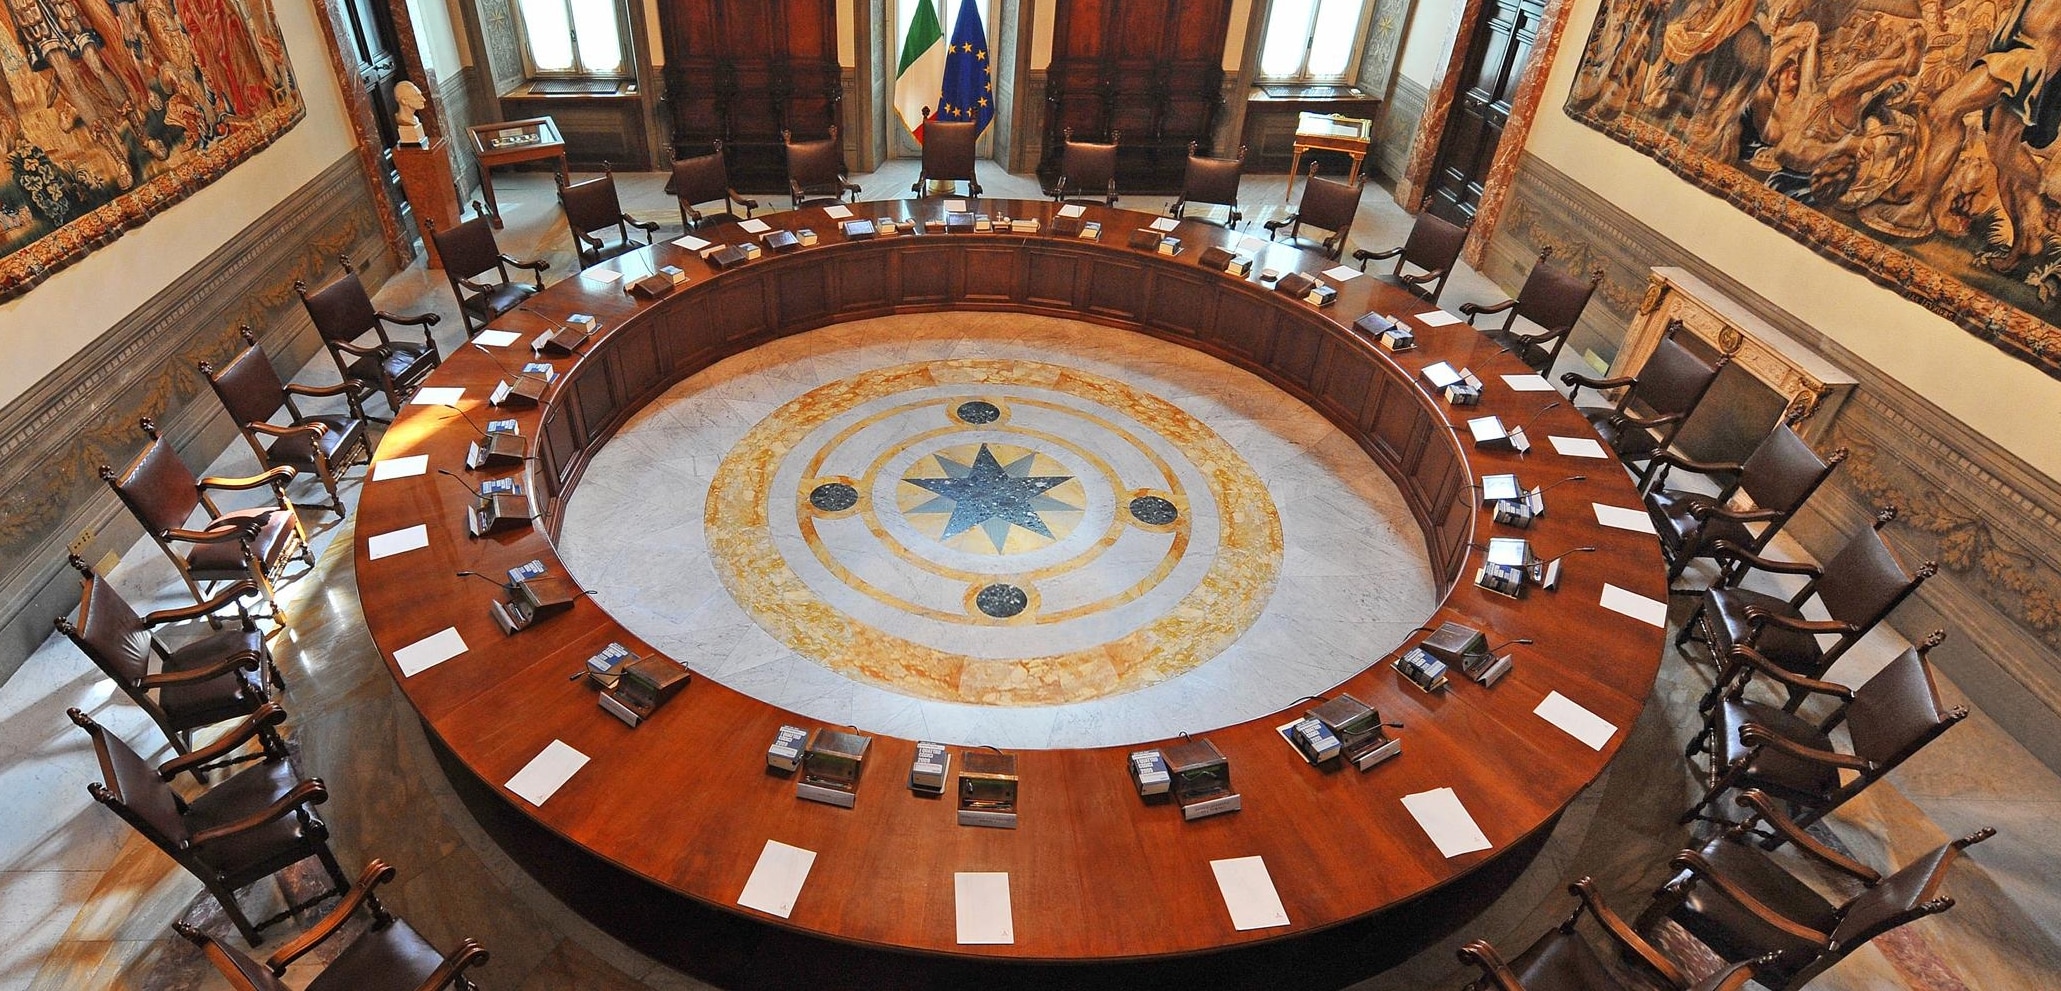 La salle du Conseil italien des ministres au palais Chigi.
Wiki commons